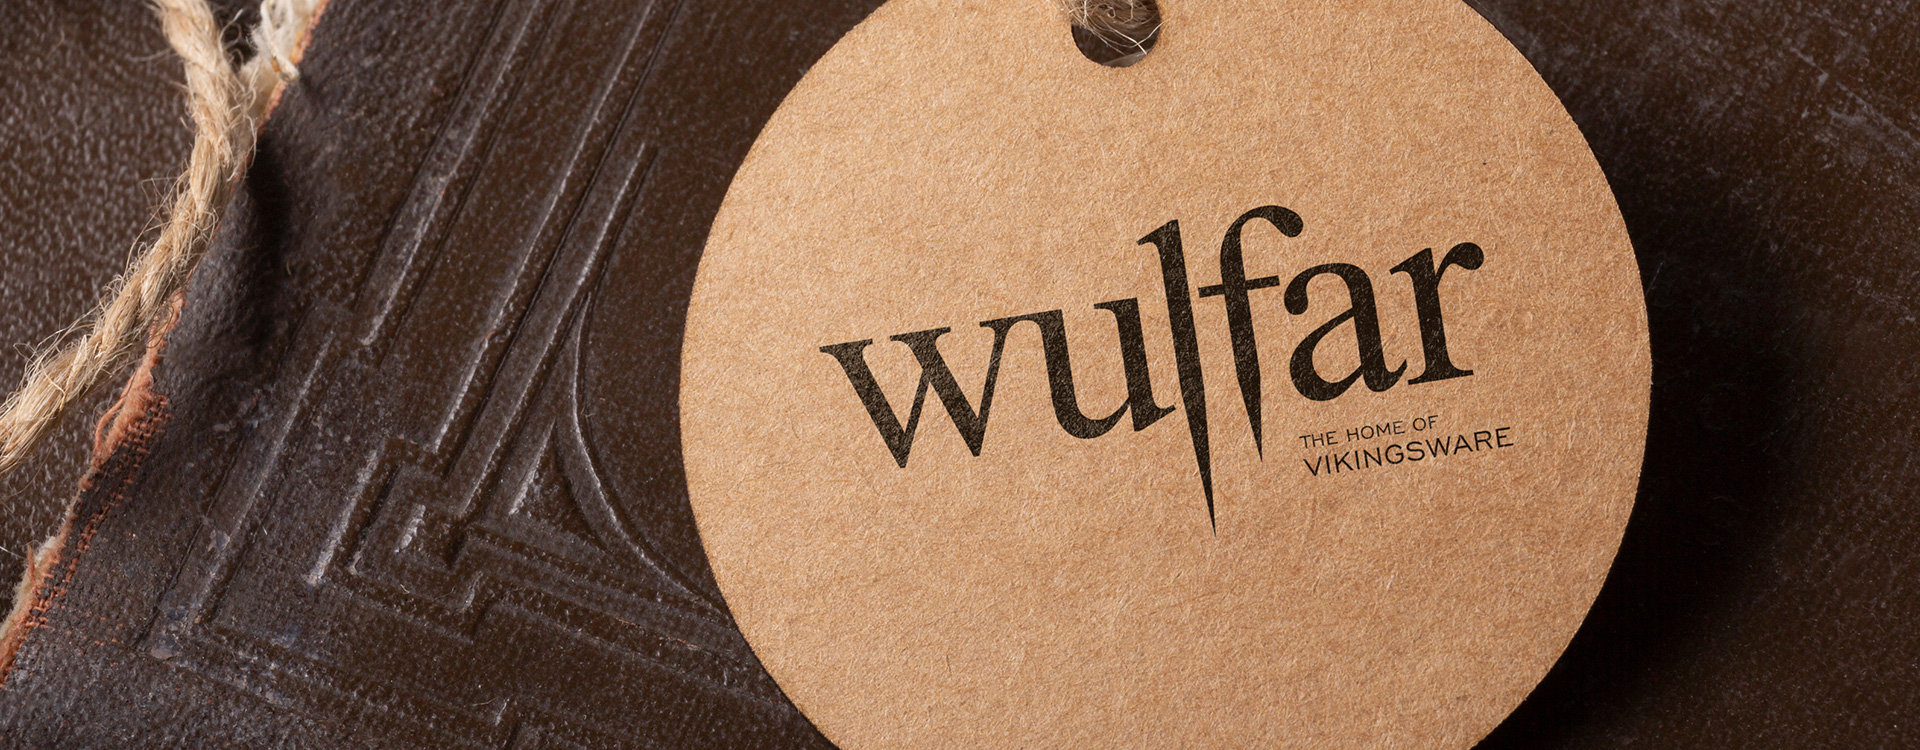 Wulfar Vikingsware